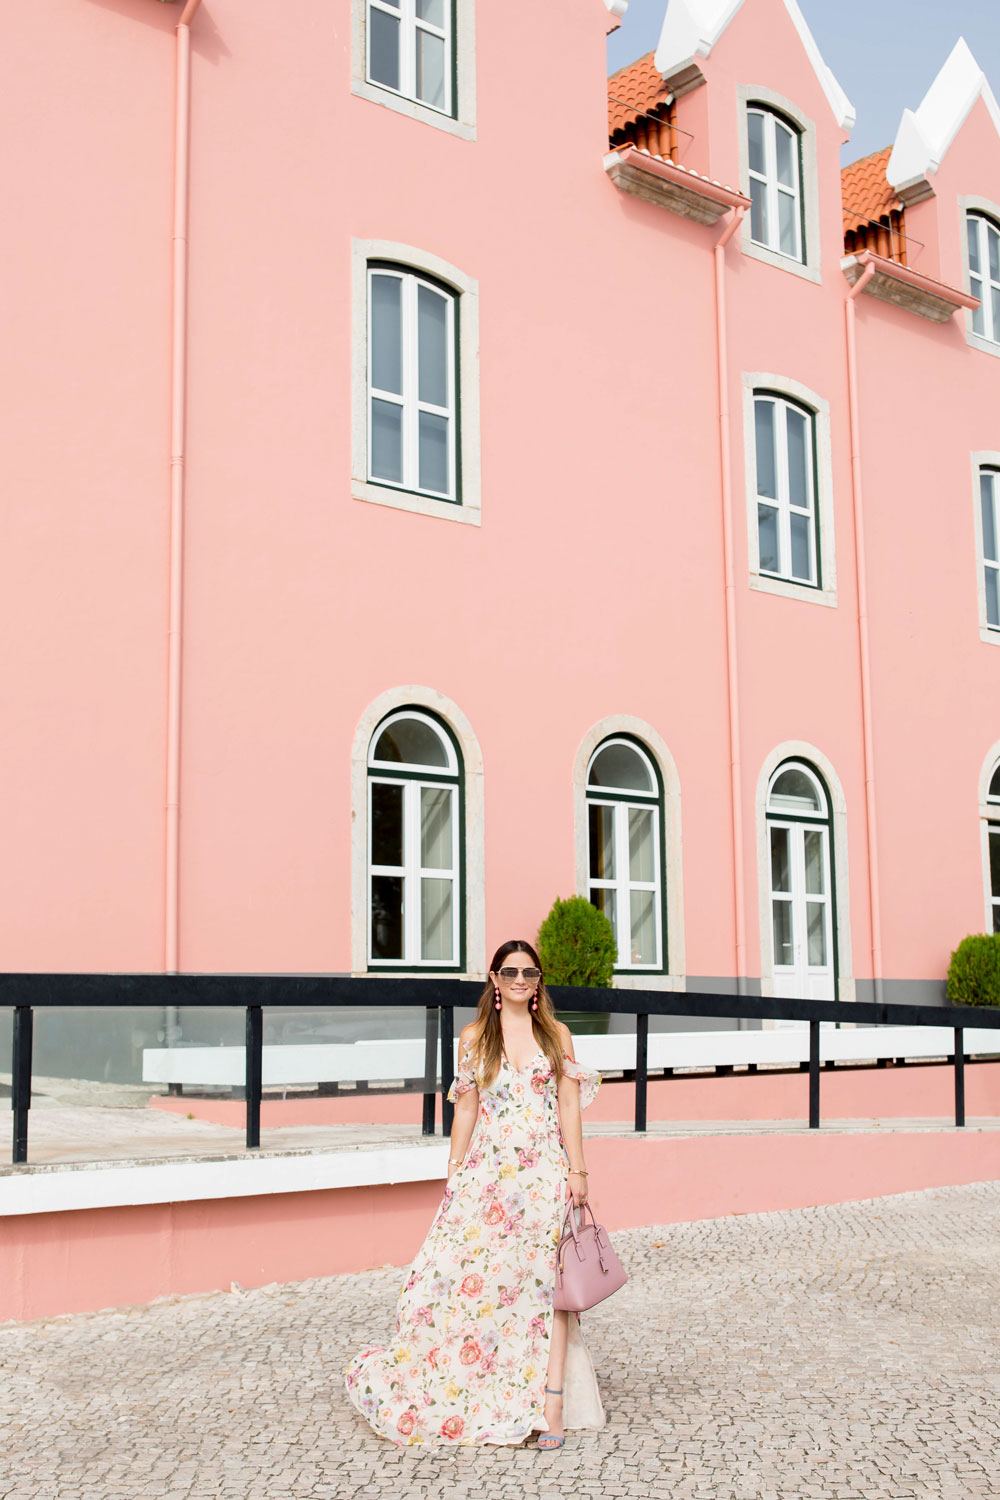 Cascais Portugal Pink Building